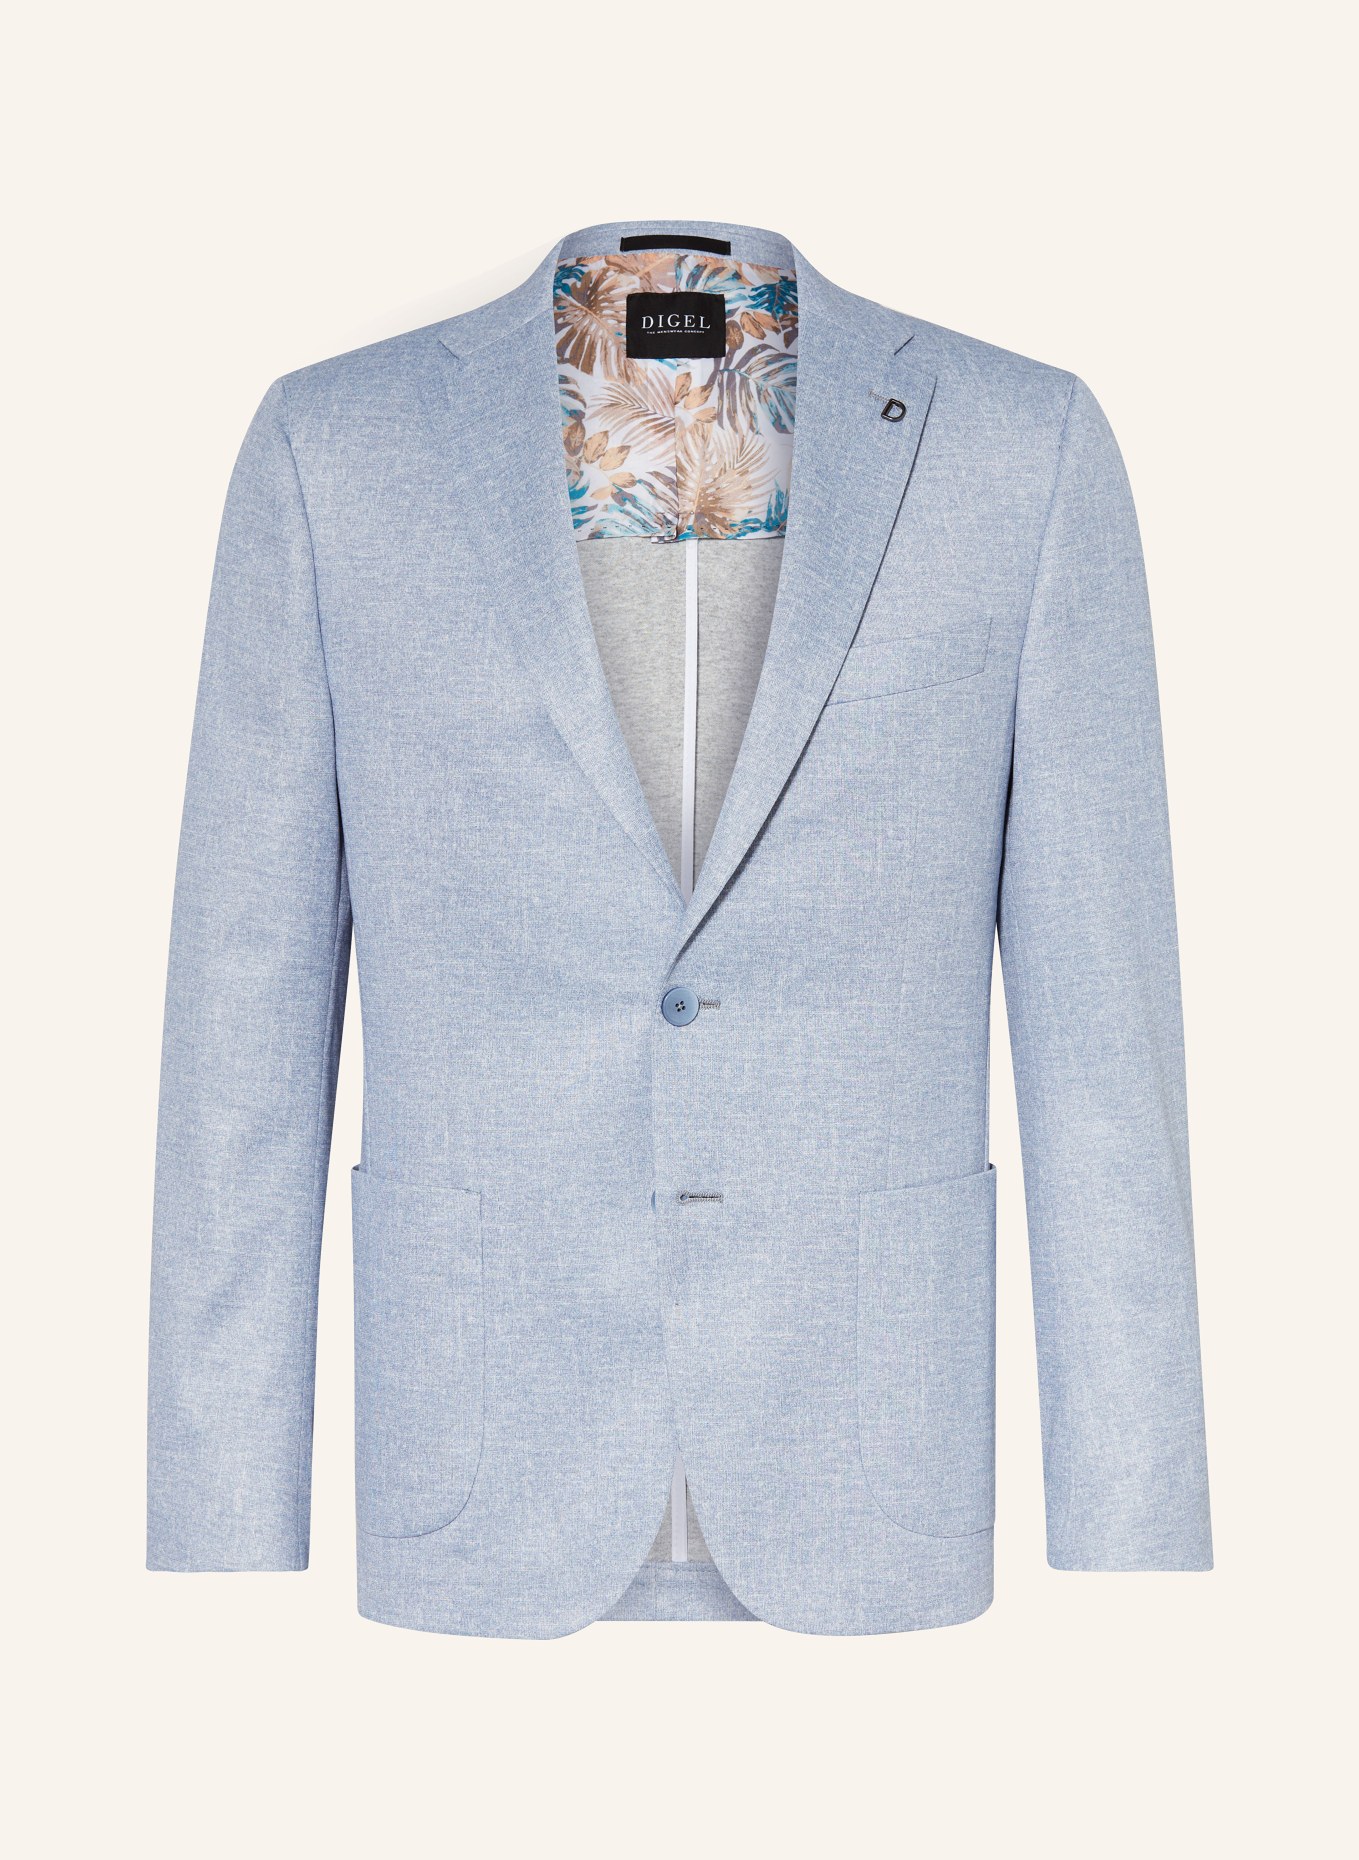 DIGEL Suit jacket EDWARD regular fit in jersey, Color: LIGHT BLUE (Image 1)